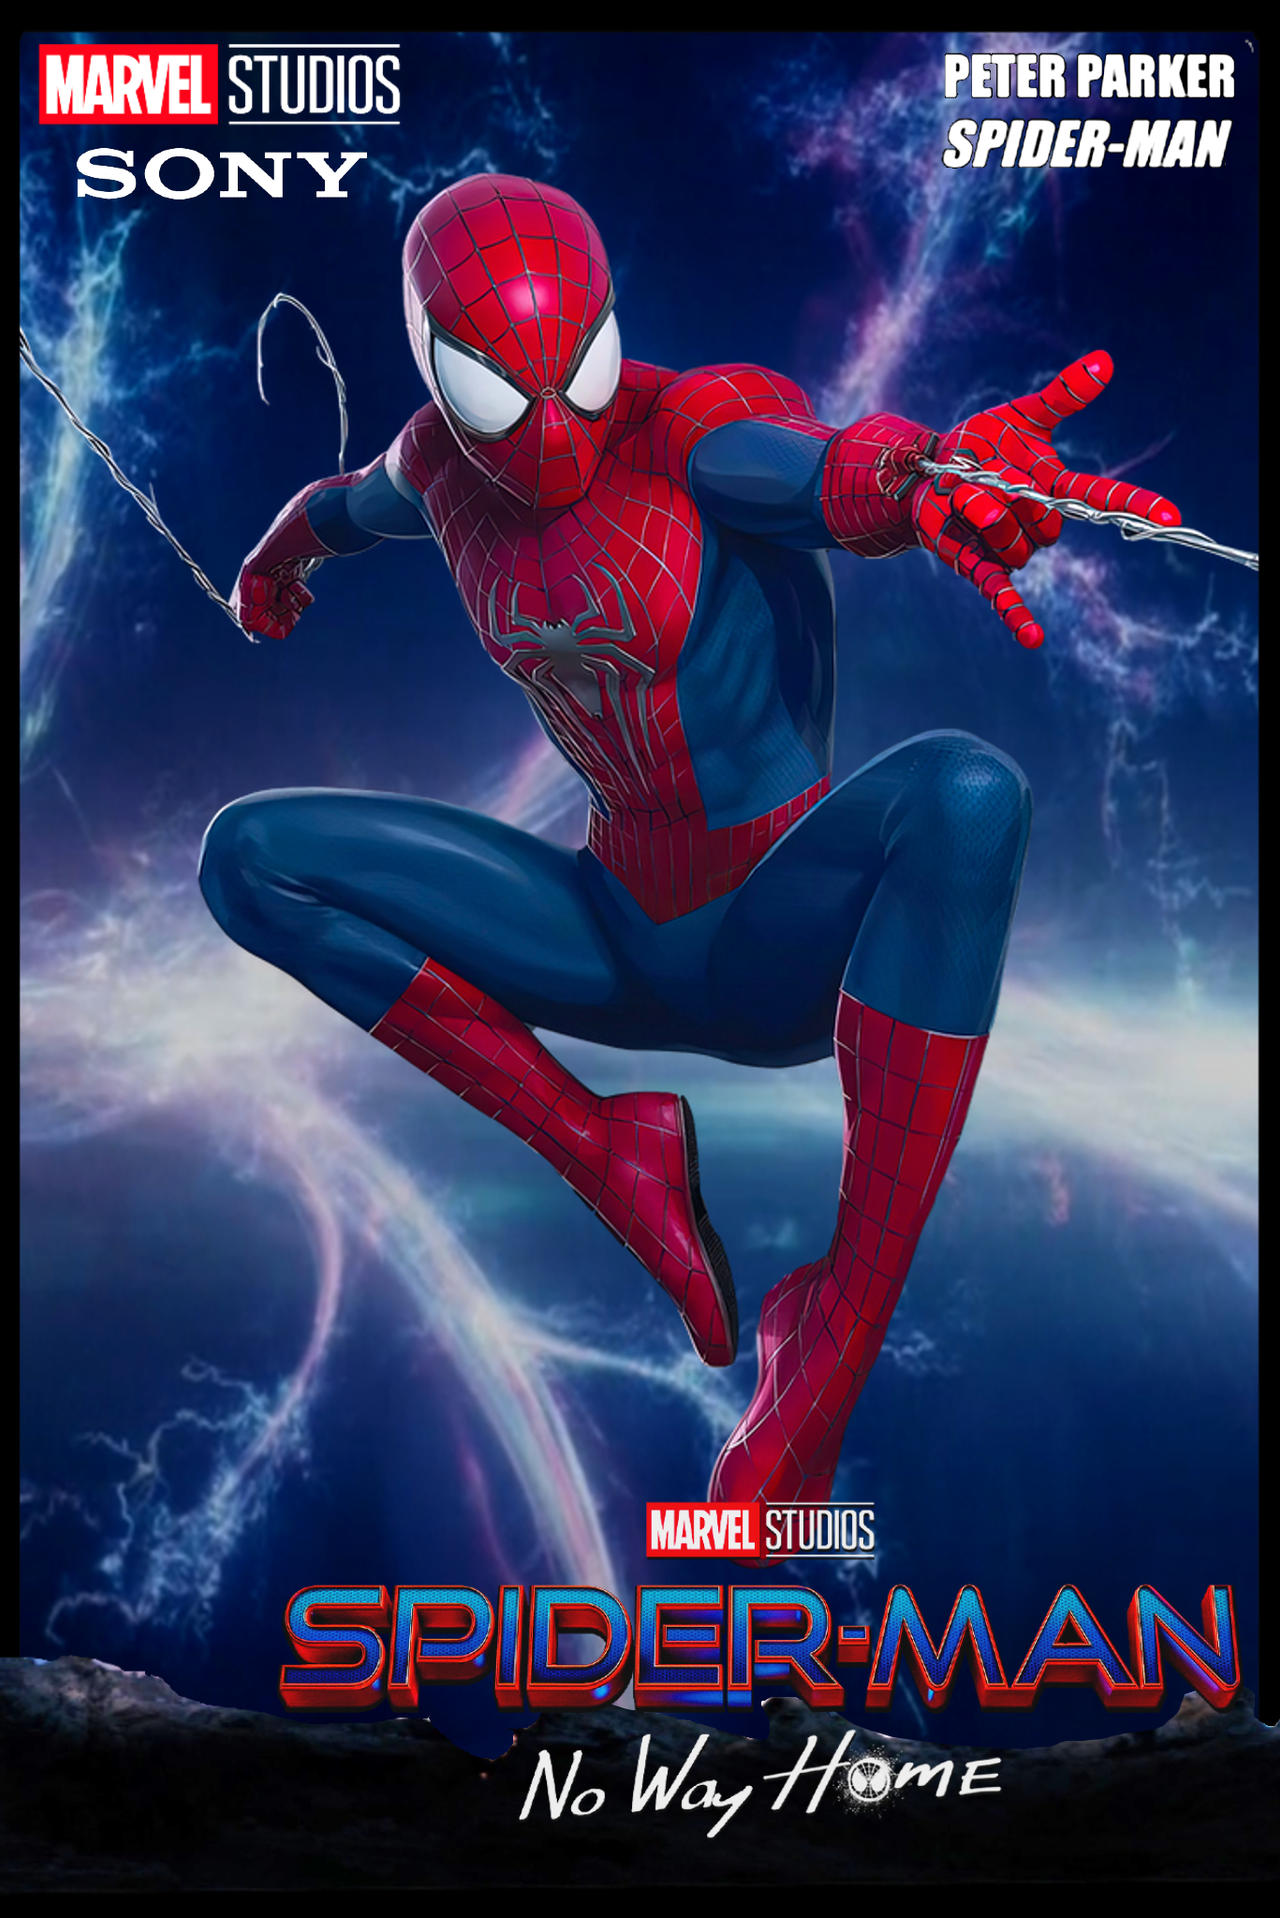 Andrew Spider-Man Spider-Man No Way Home Poster by bertzee on DeviantArt